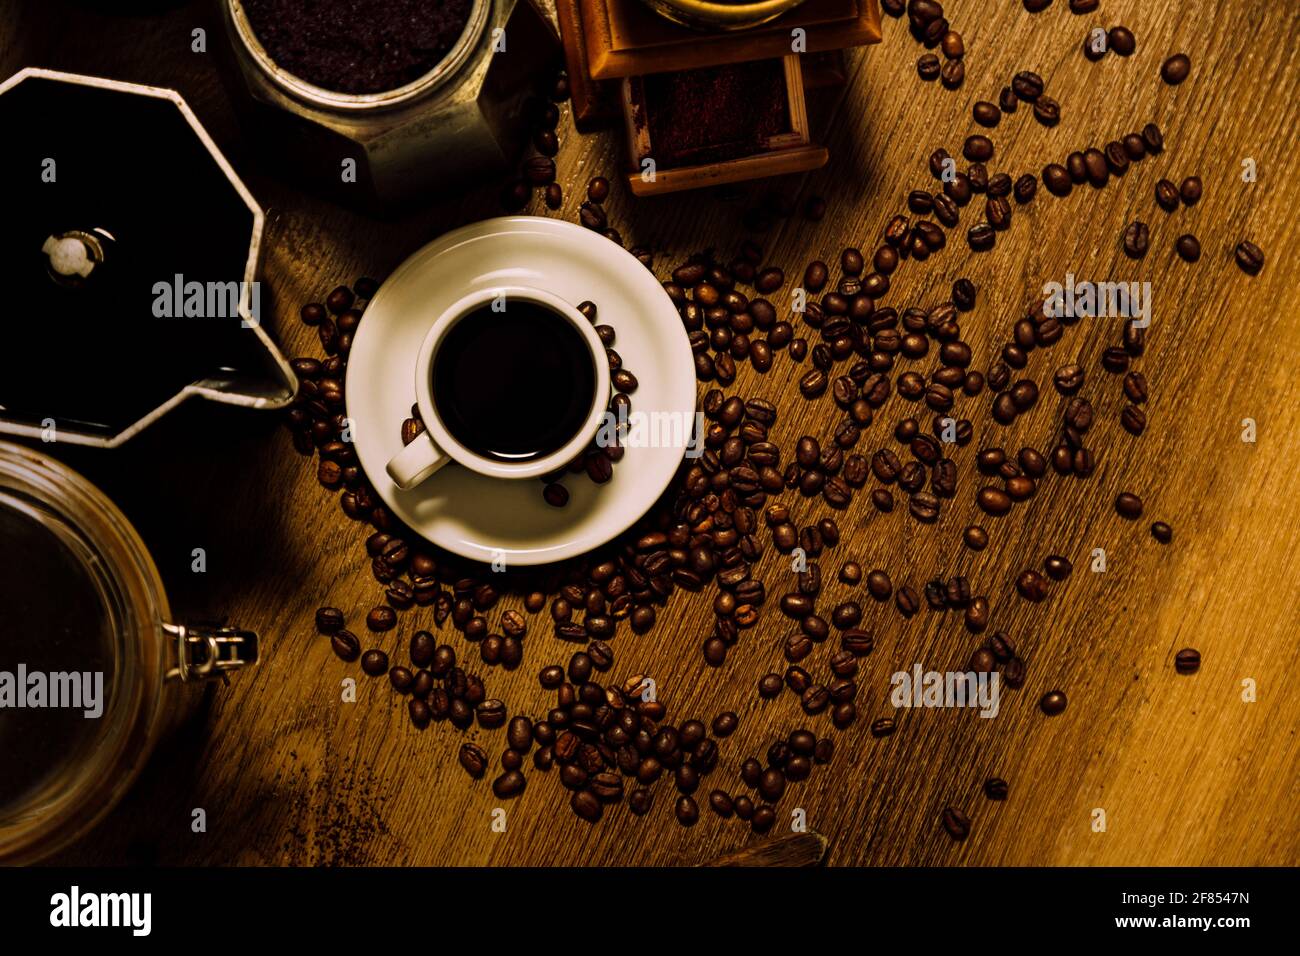 Roba di caffè. Vista dall'alto di una tazza bianca con caffè nero, moka italiana, un mulino e cereali su un tavolo di legno. Stile rustico vintage. Foto Stock